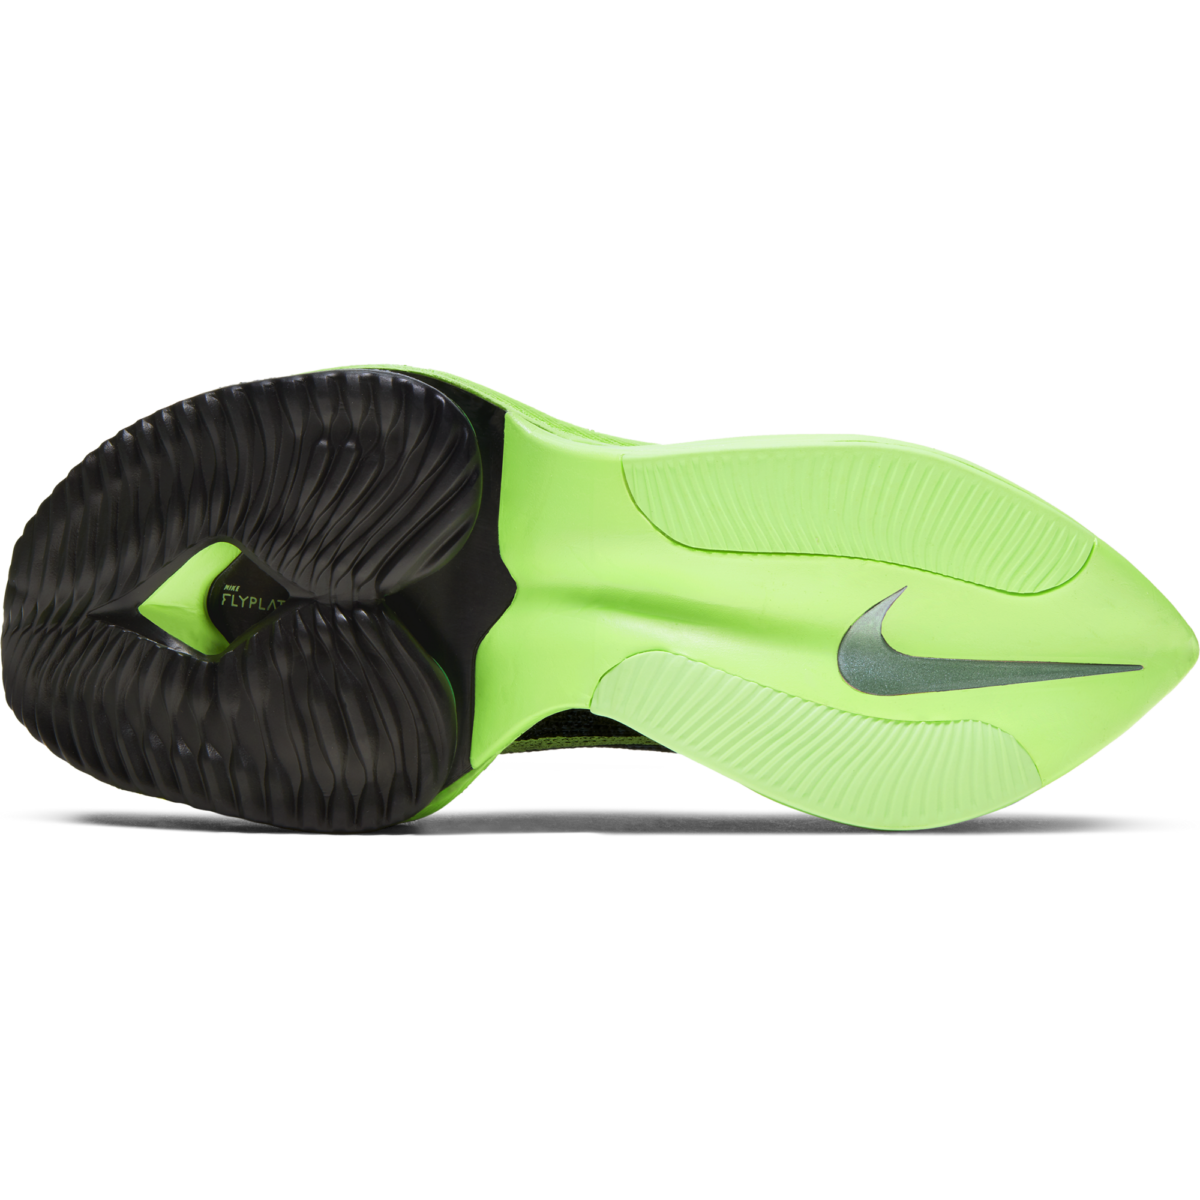 Women's Nike Alphafly Next% CZ1514-400